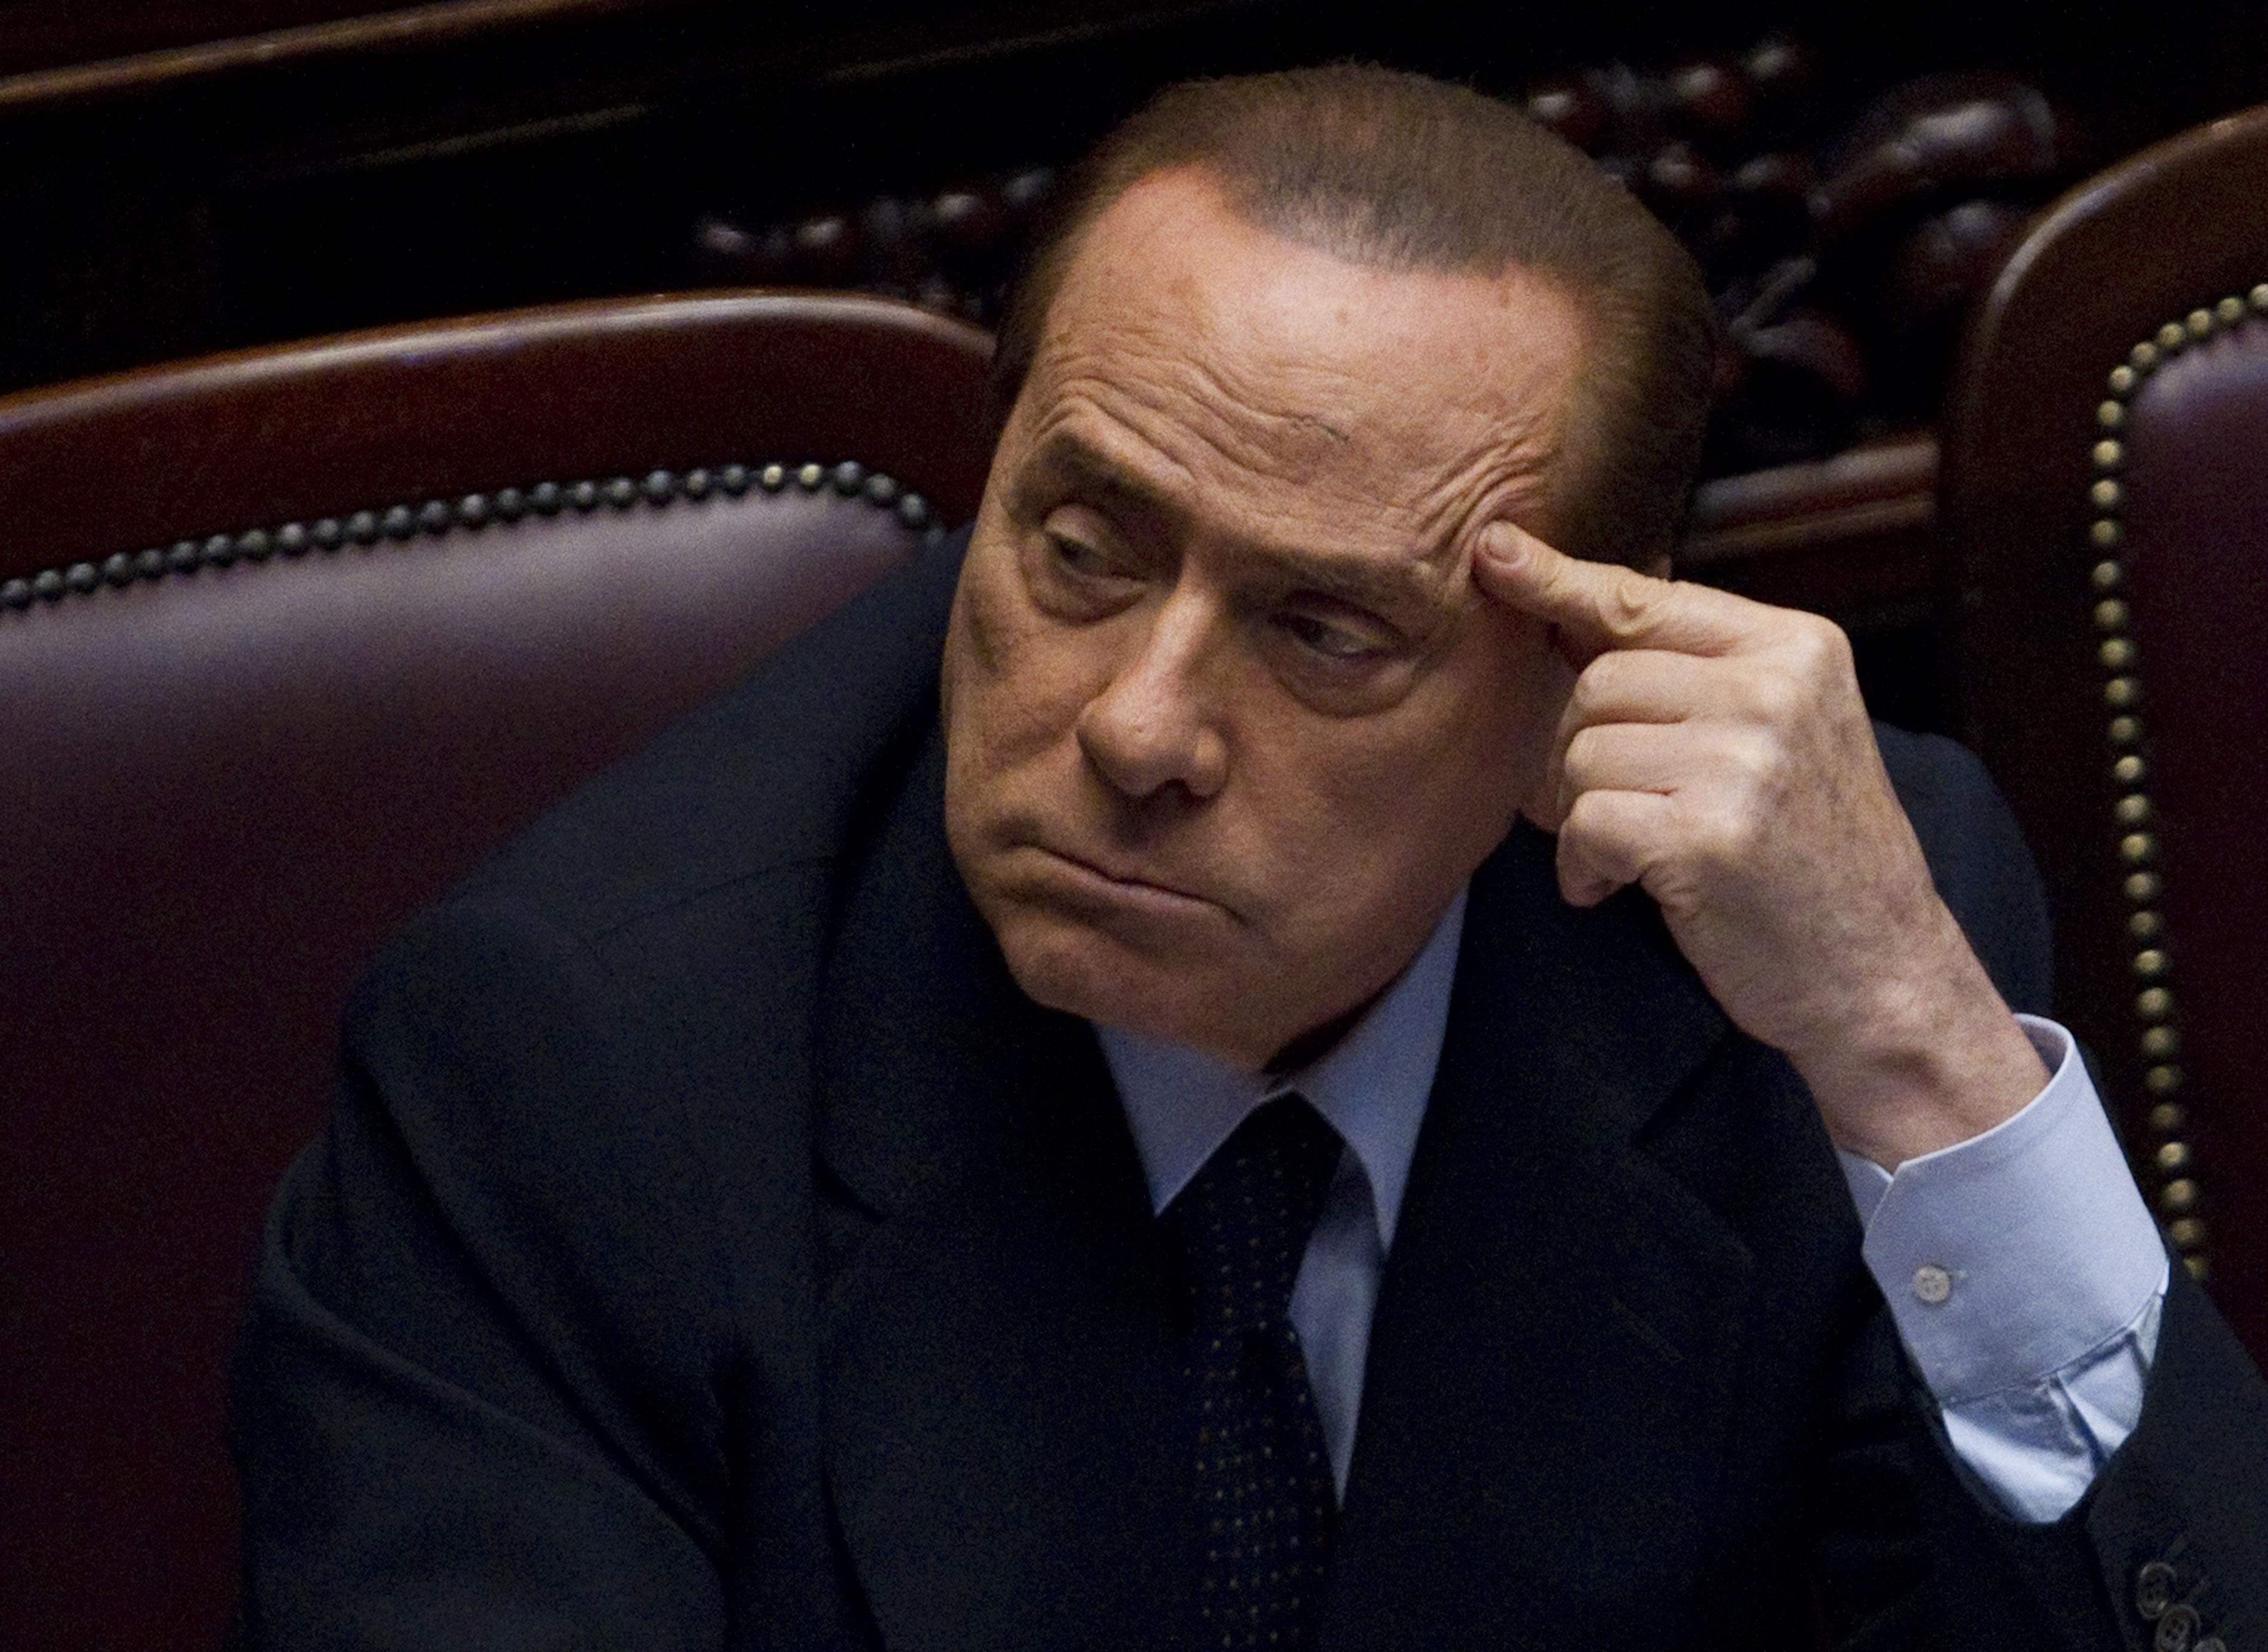 Berlusconi, Brott och straff, Italien, Prostitution, Sexualbrott, Köp av sexuell tjänst, Sex- och samlevnad, Utpressning, Silvio Berlusconi, Politik